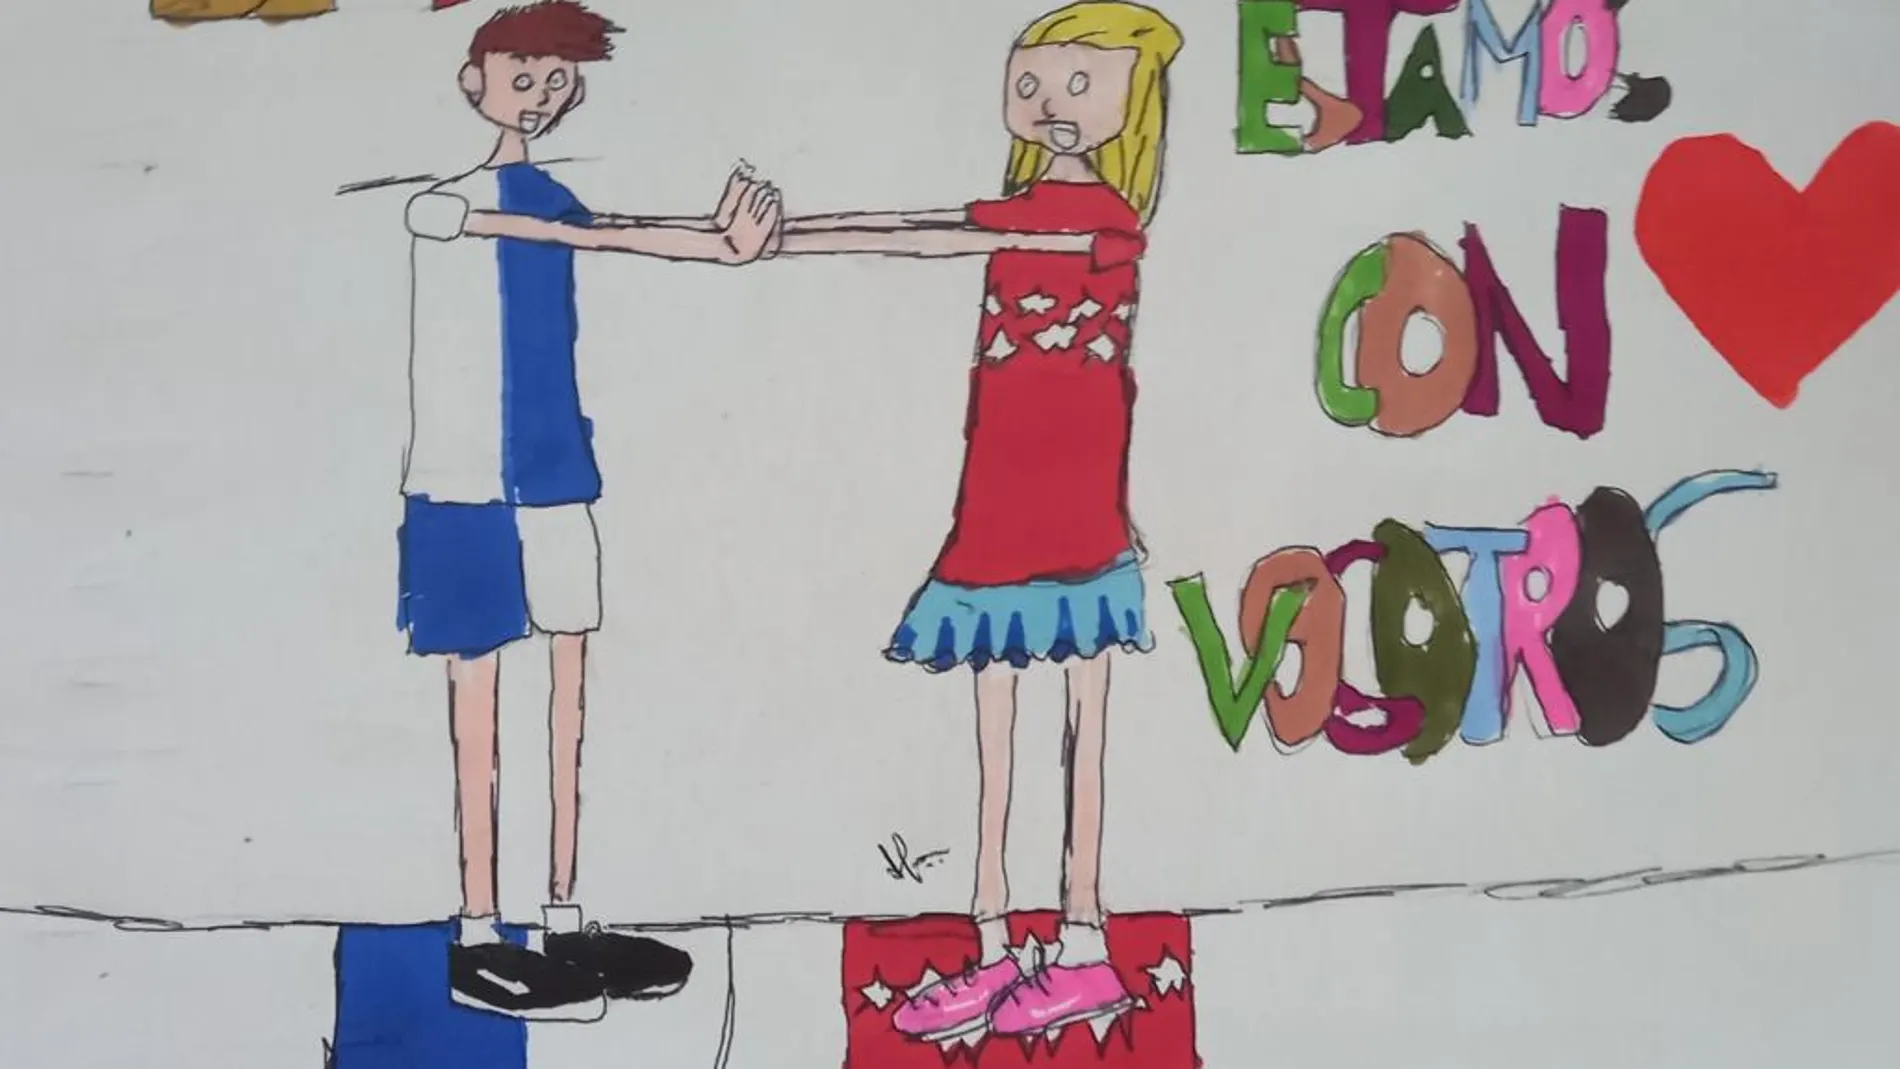 «De Madrid a La Palma: estamos con vosotros», dice uno de los dibujos